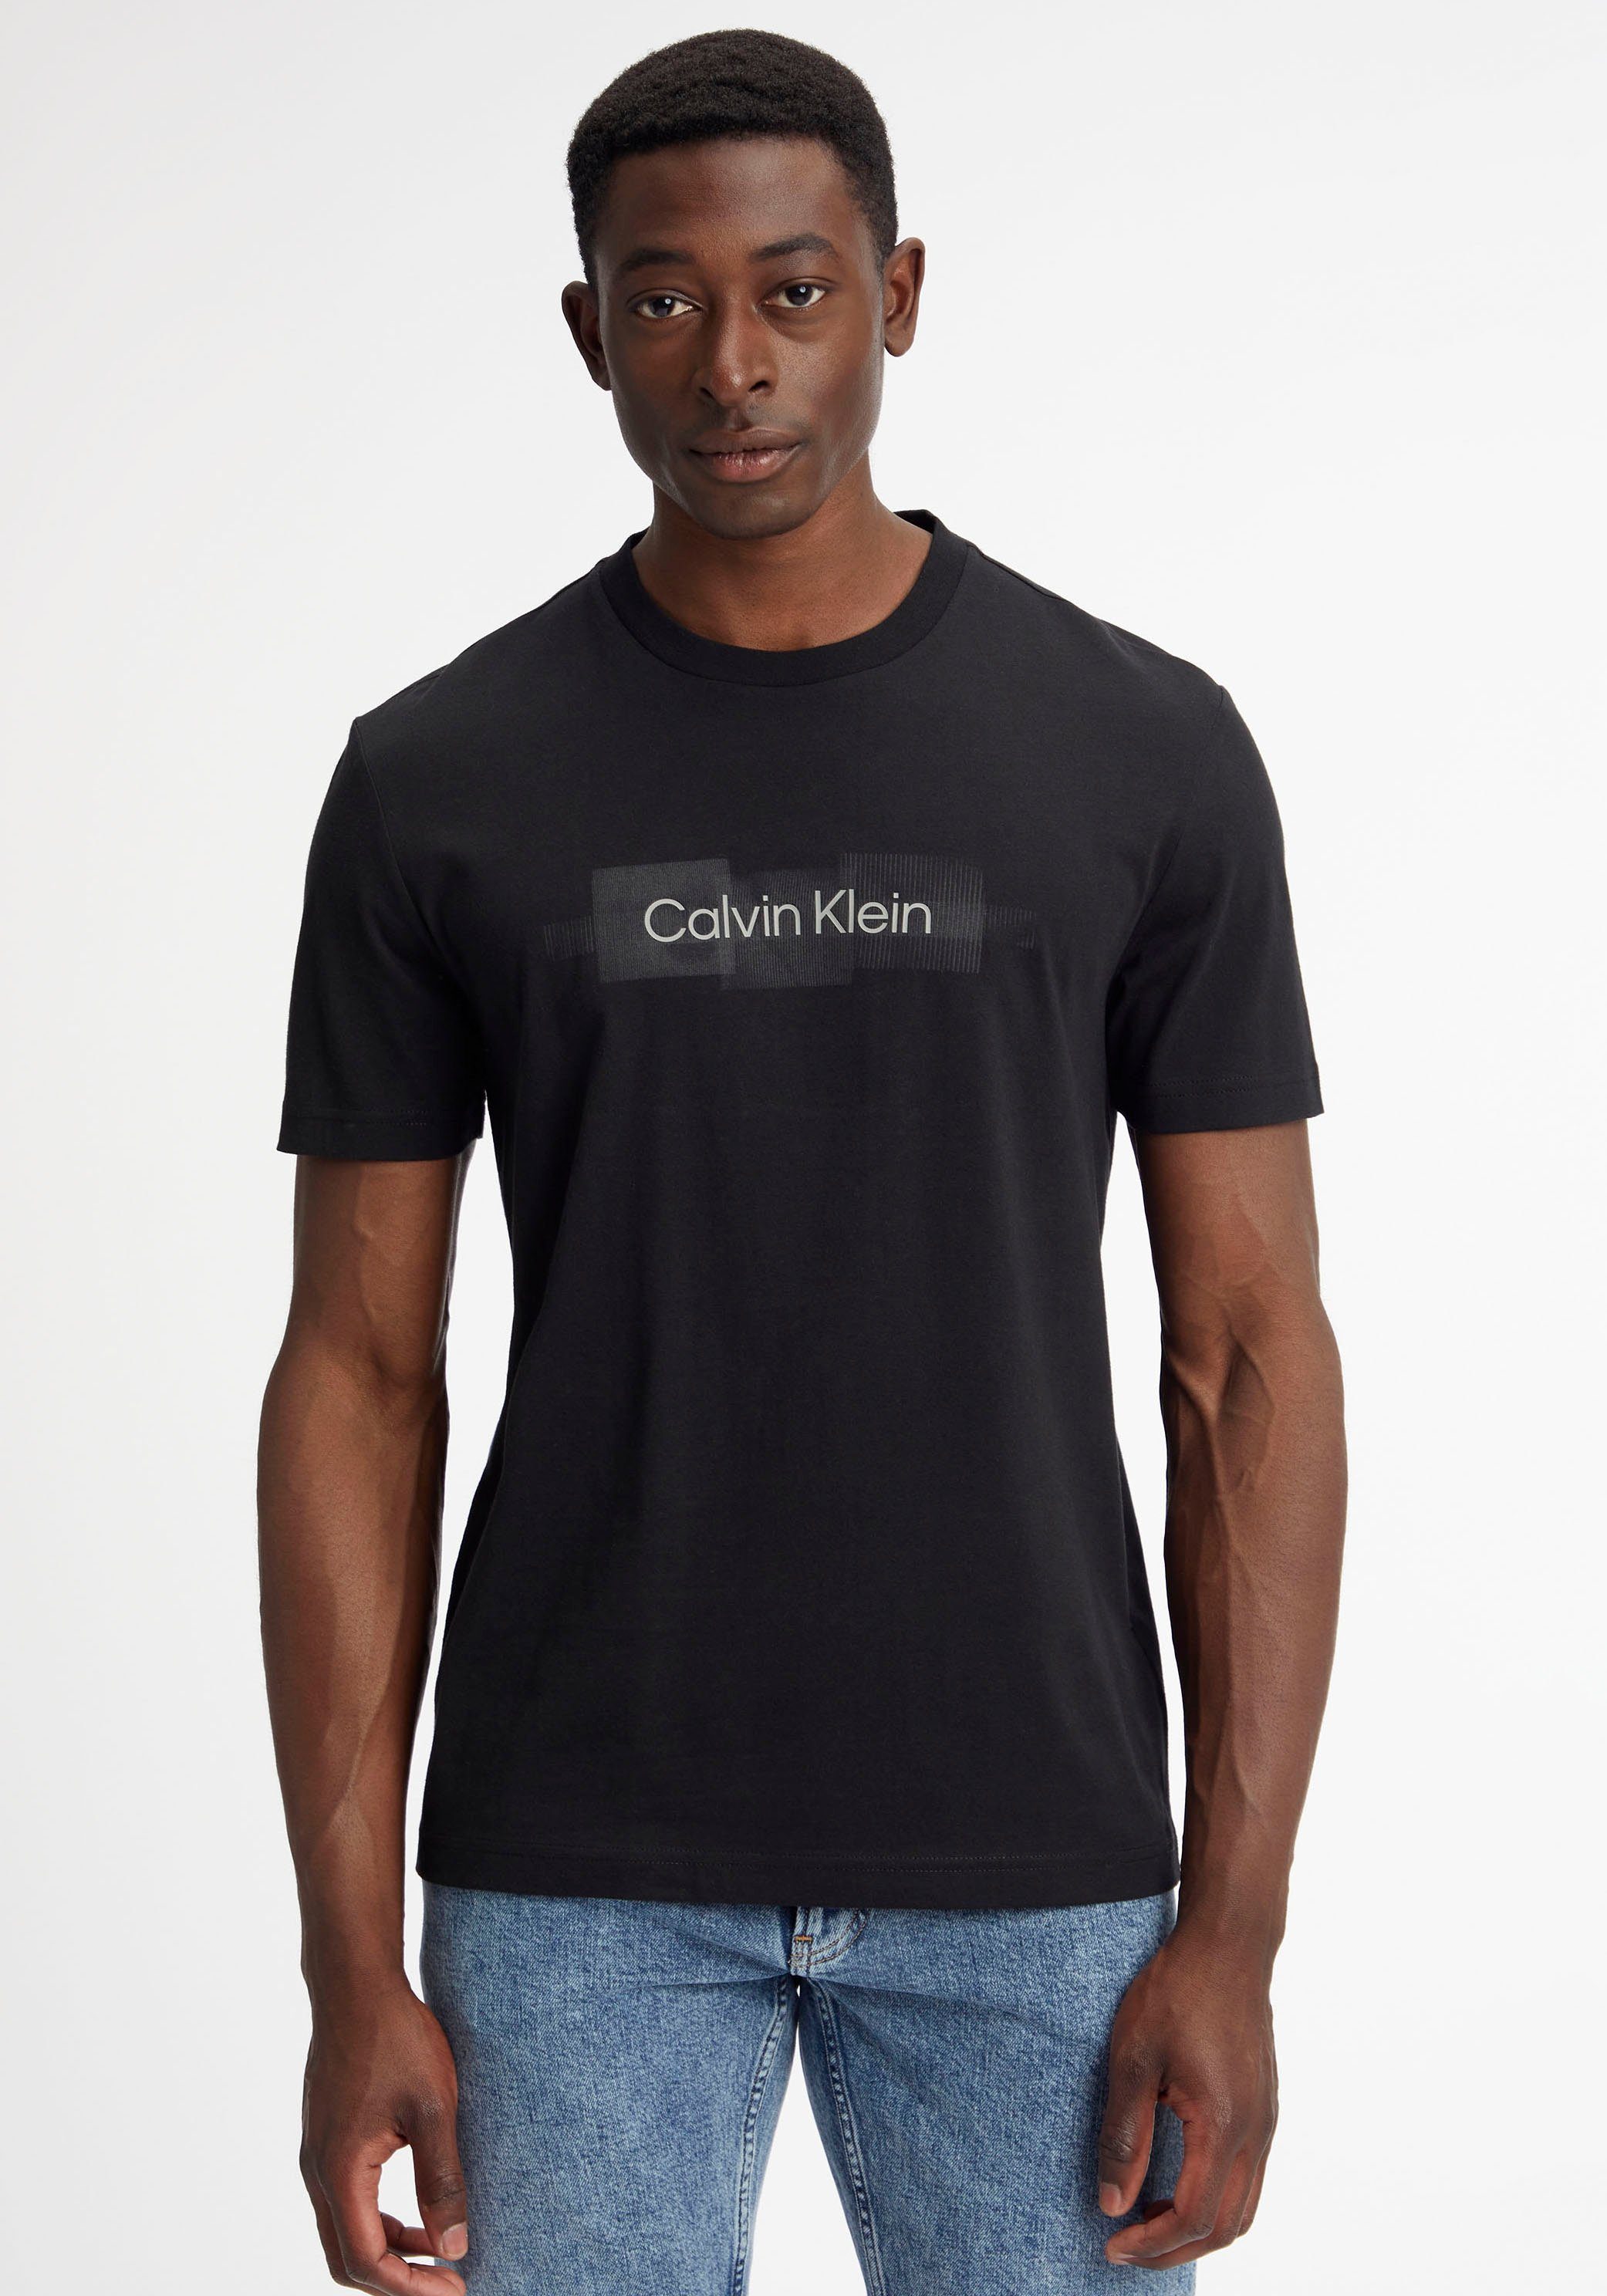 Calvin Klein T-Shirt BOX STRIPED Baumwolle LOGO T-SHIRT aus Black Ck reiner